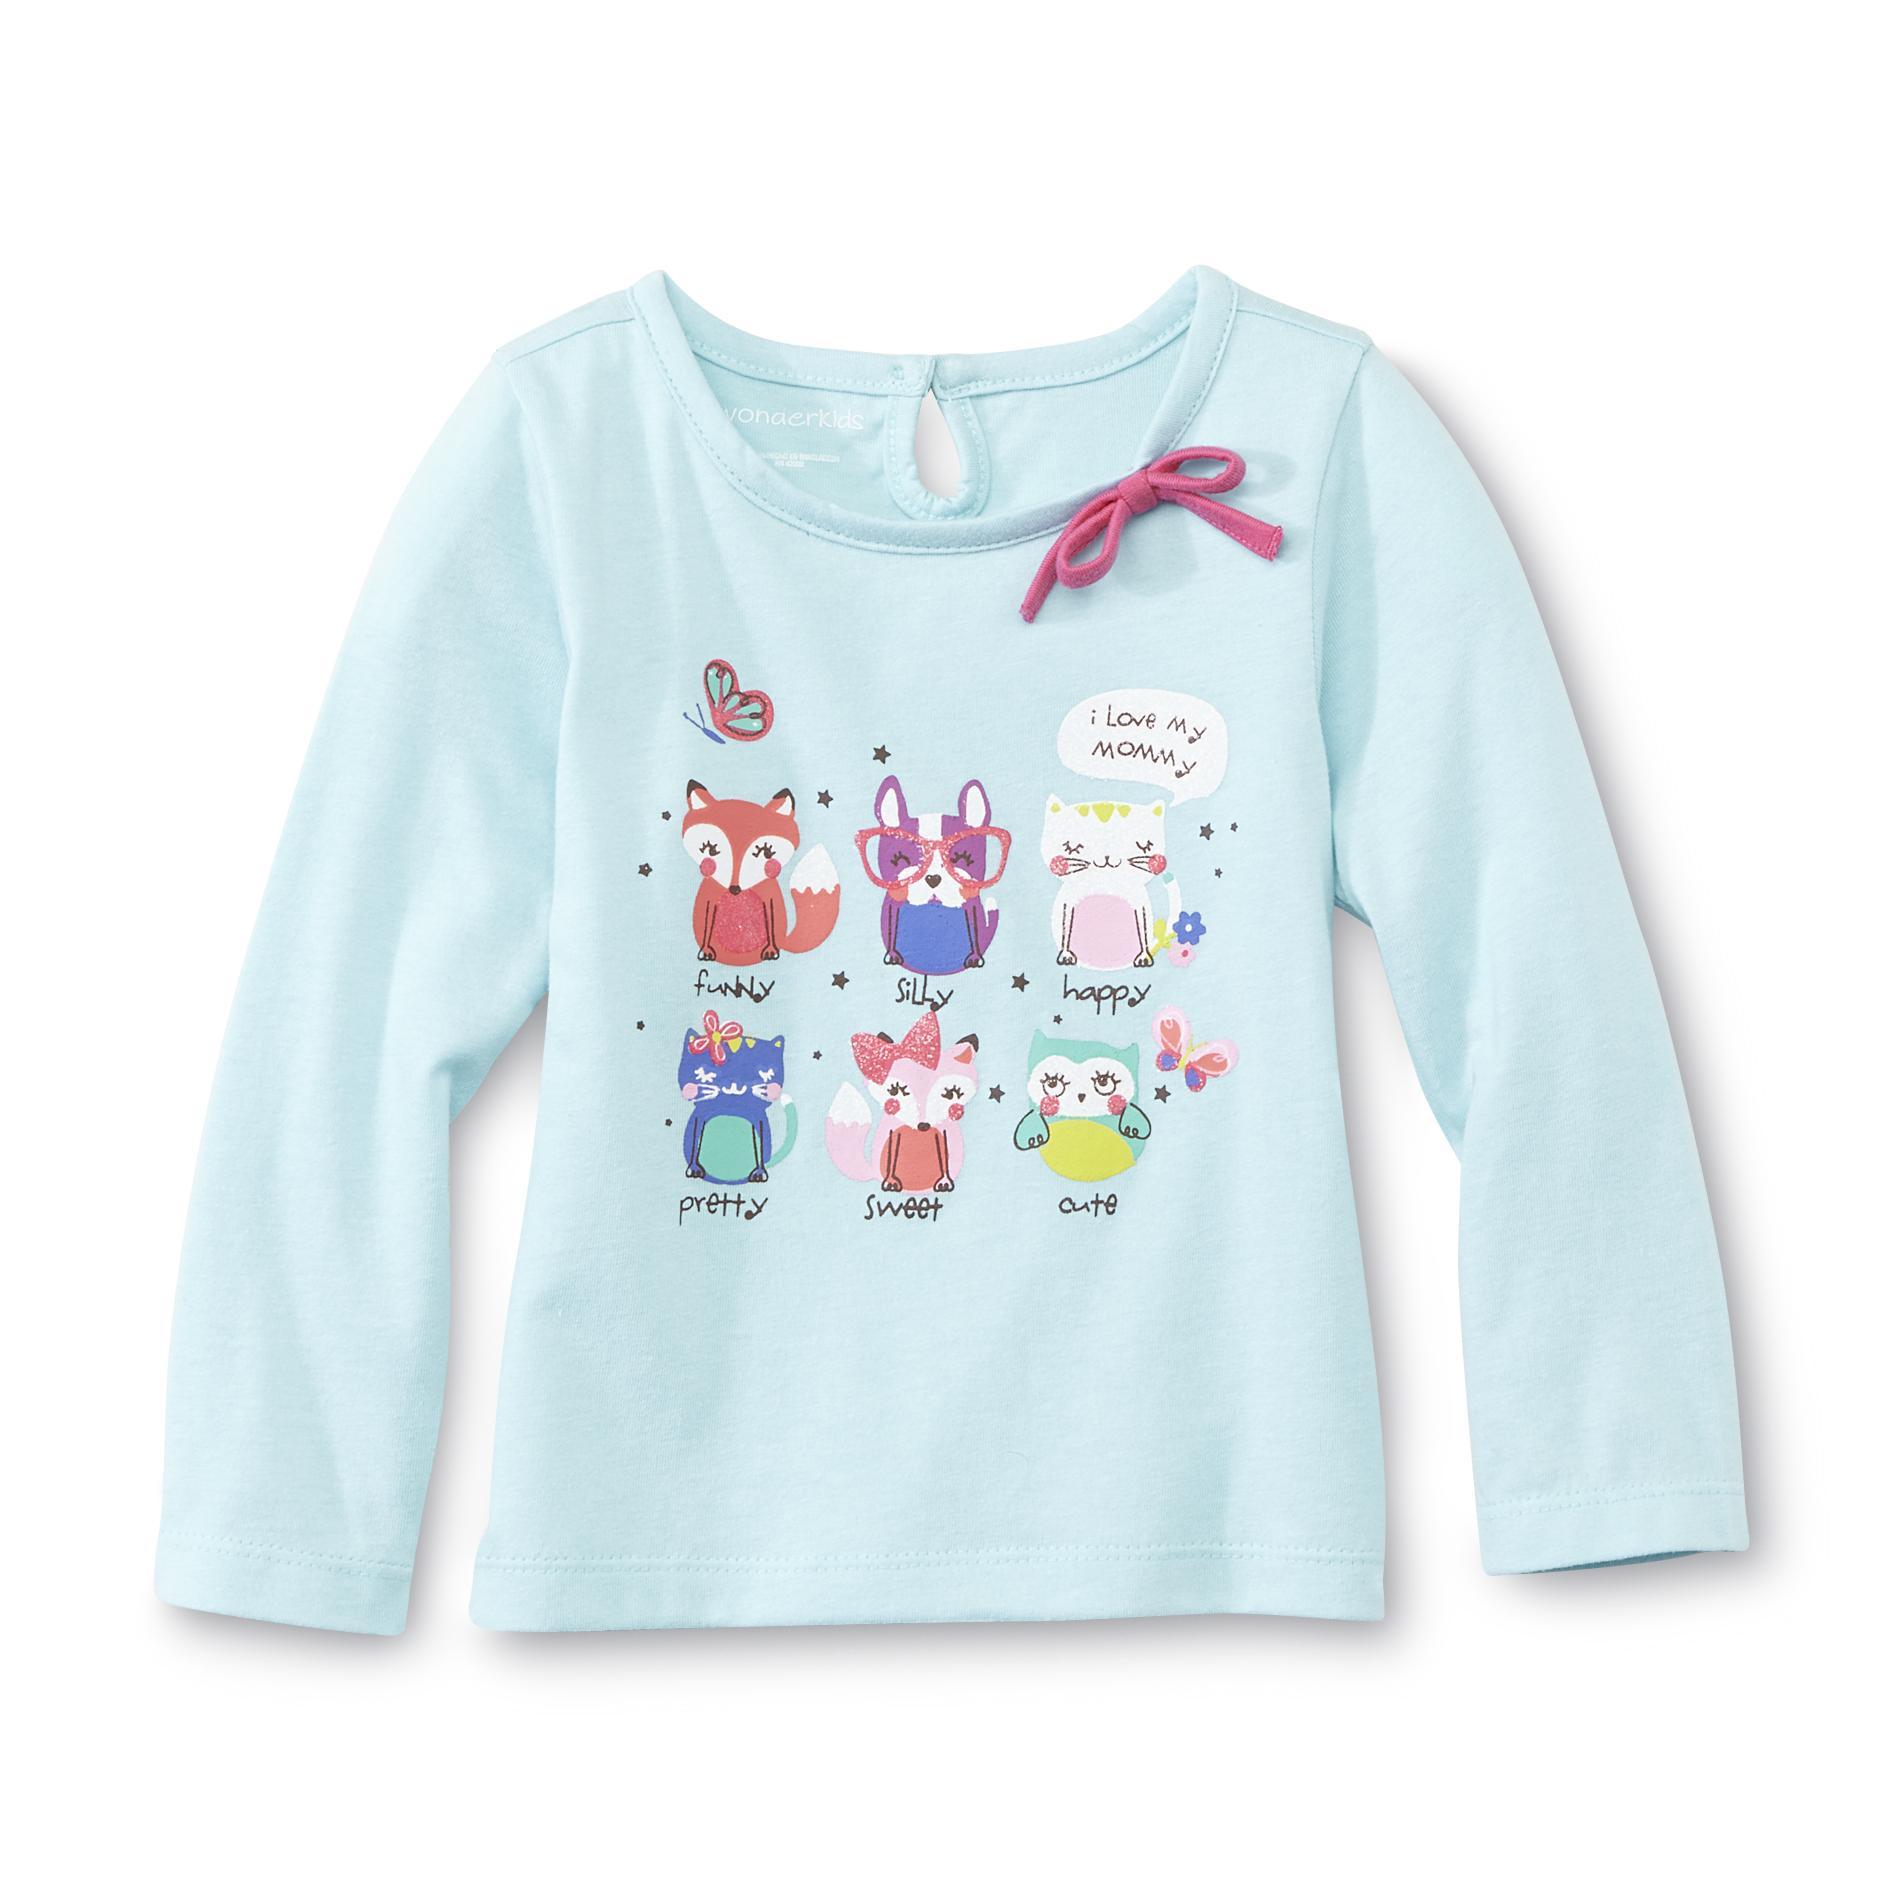 WonderKids Infant & Toddler Girl's Long-Sleeve T-Shirt - I Love Mommy